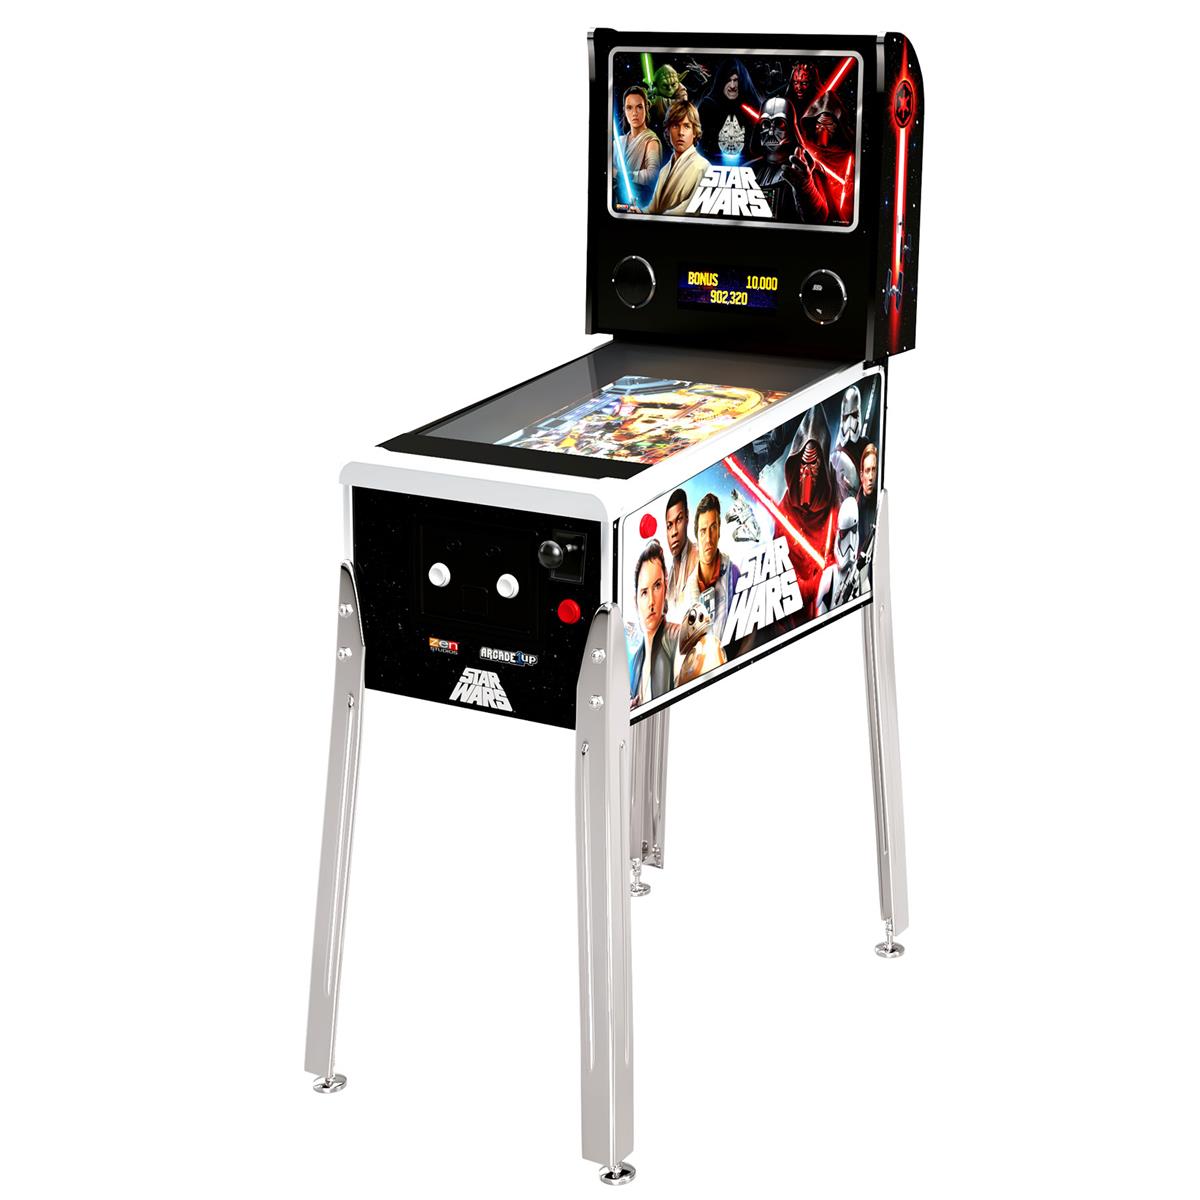 Image of Tastemaker Arcade1Up Star Wars Digital Pinball